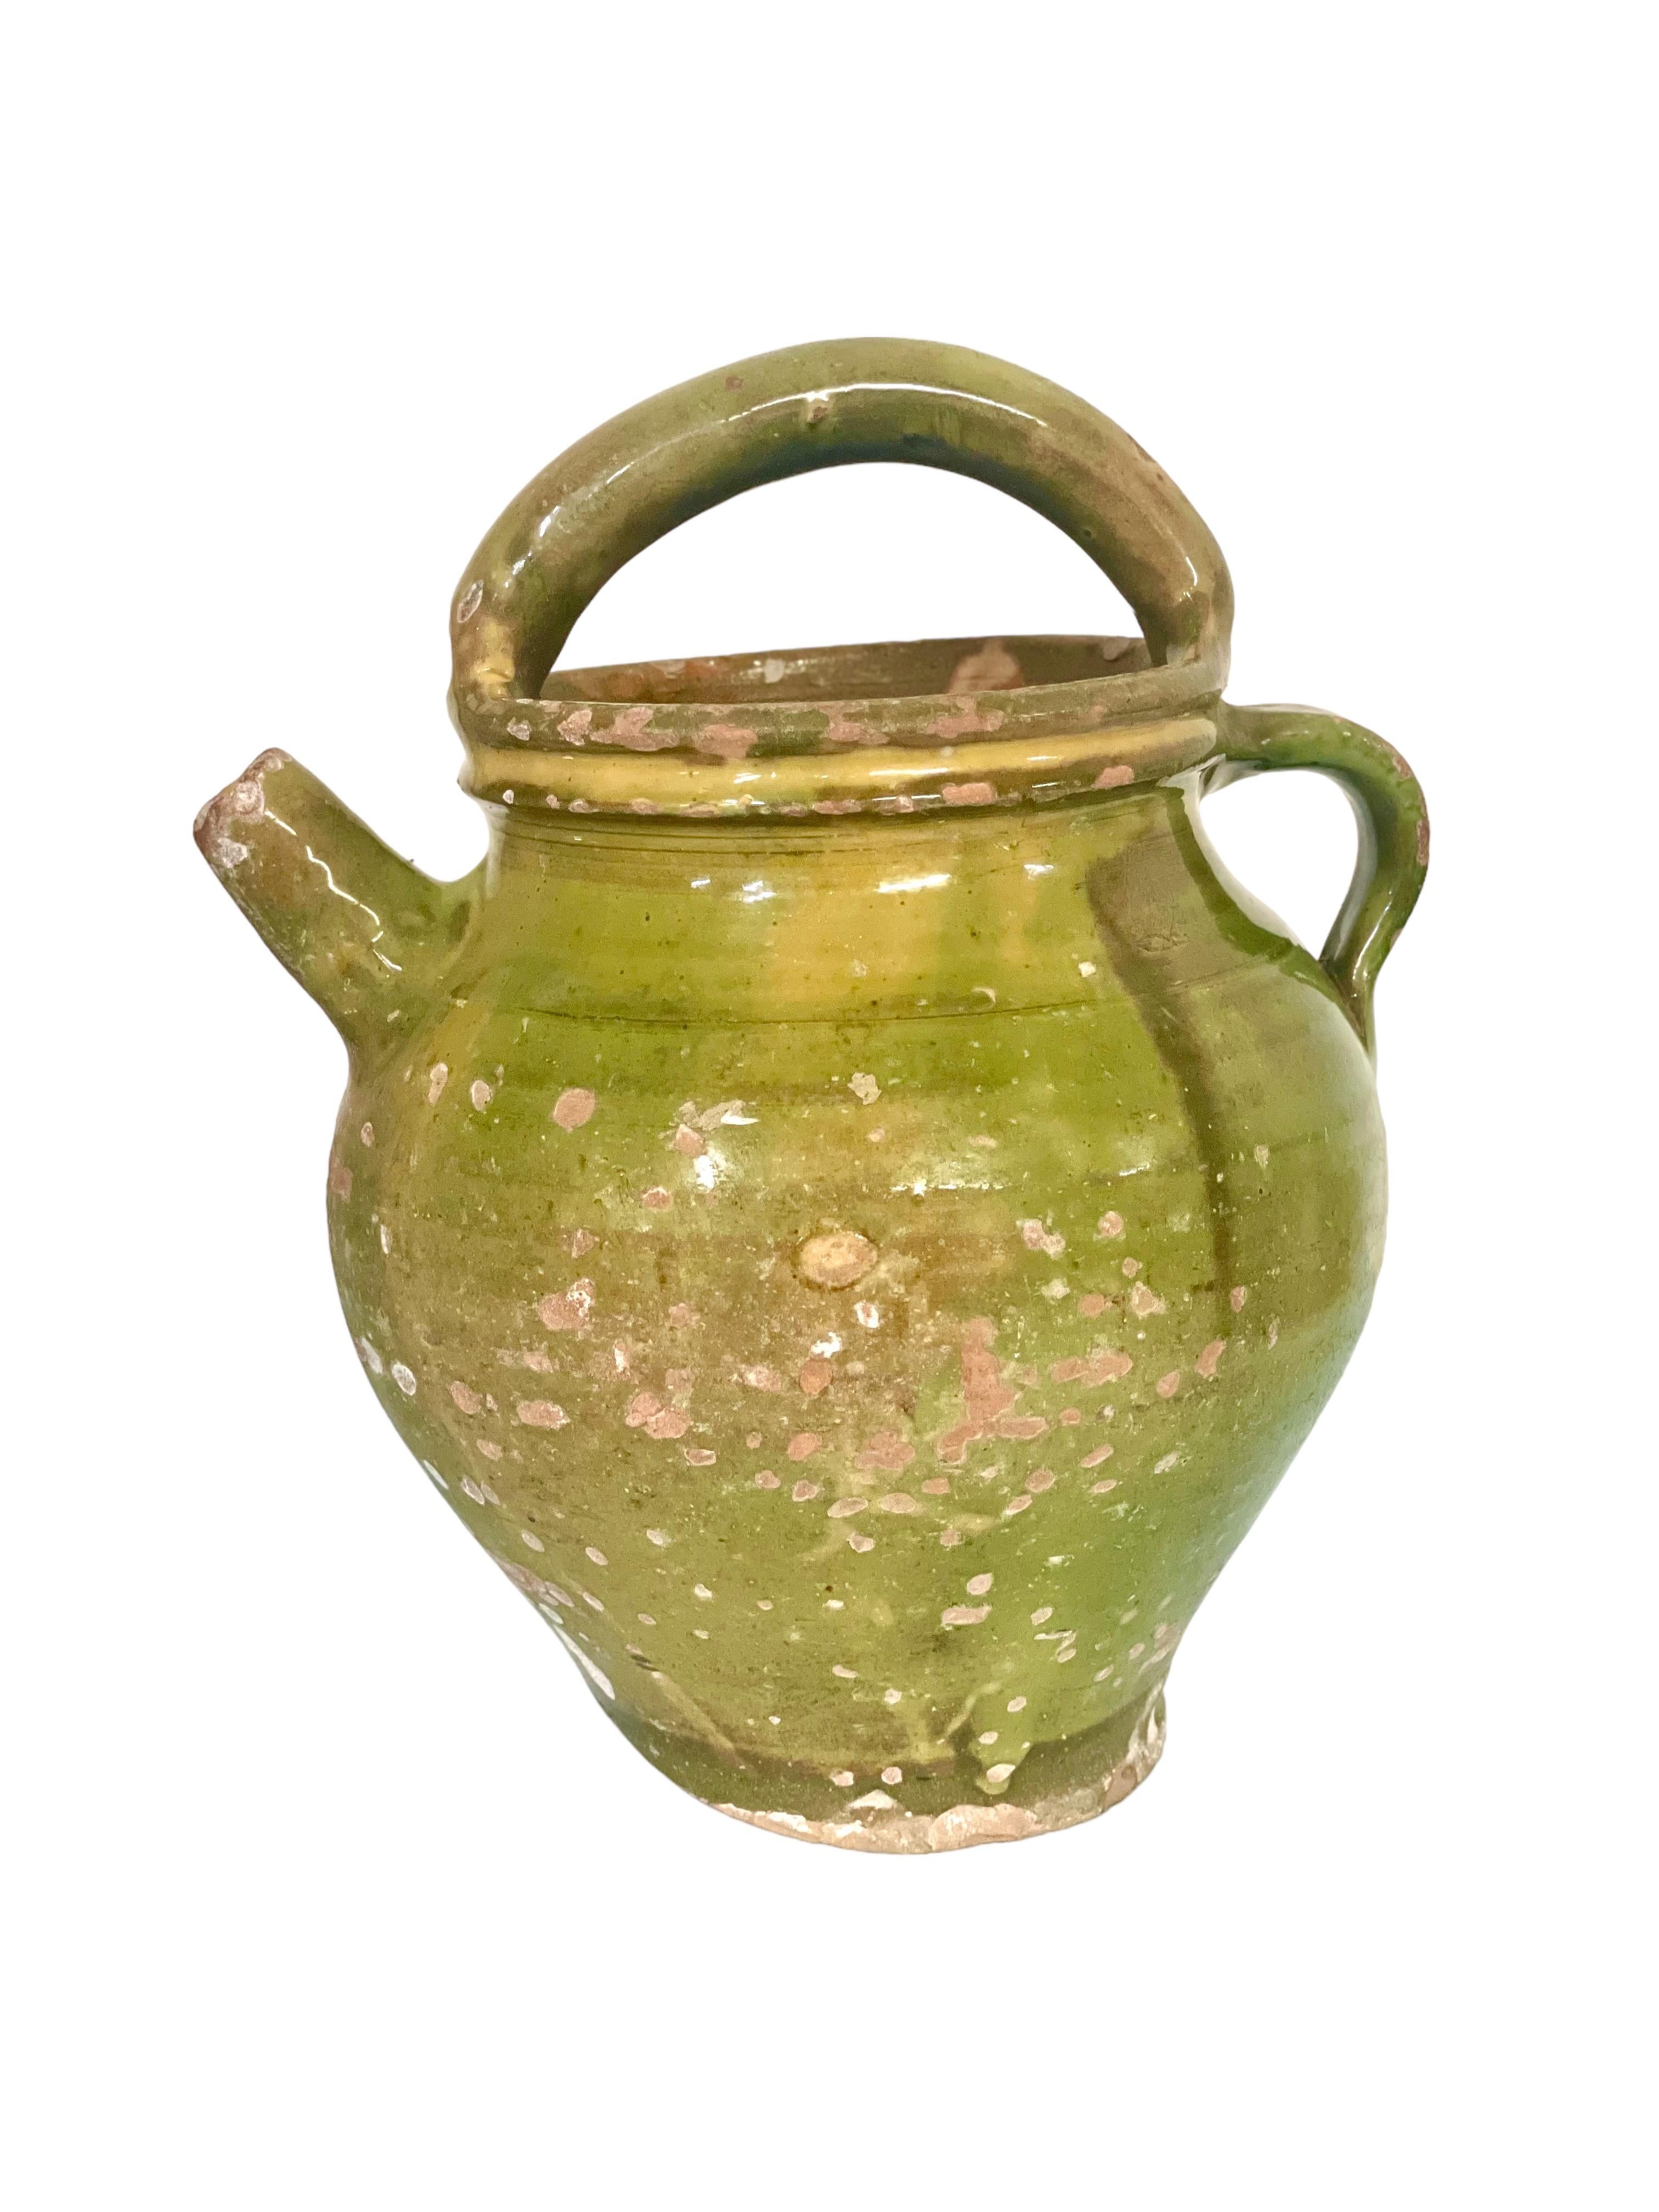 Eine hervorragende provenzalische Terrakotta-Wasserkanne aus dem 19. Jahrhundert, mit Ausguss und Henkel, in traditionellem Grün glasiert. Dieses schöne Gefäß wurde verwendet, um Wasser zu den Arbeitern auf den Feldern zu transportieren und es kühl